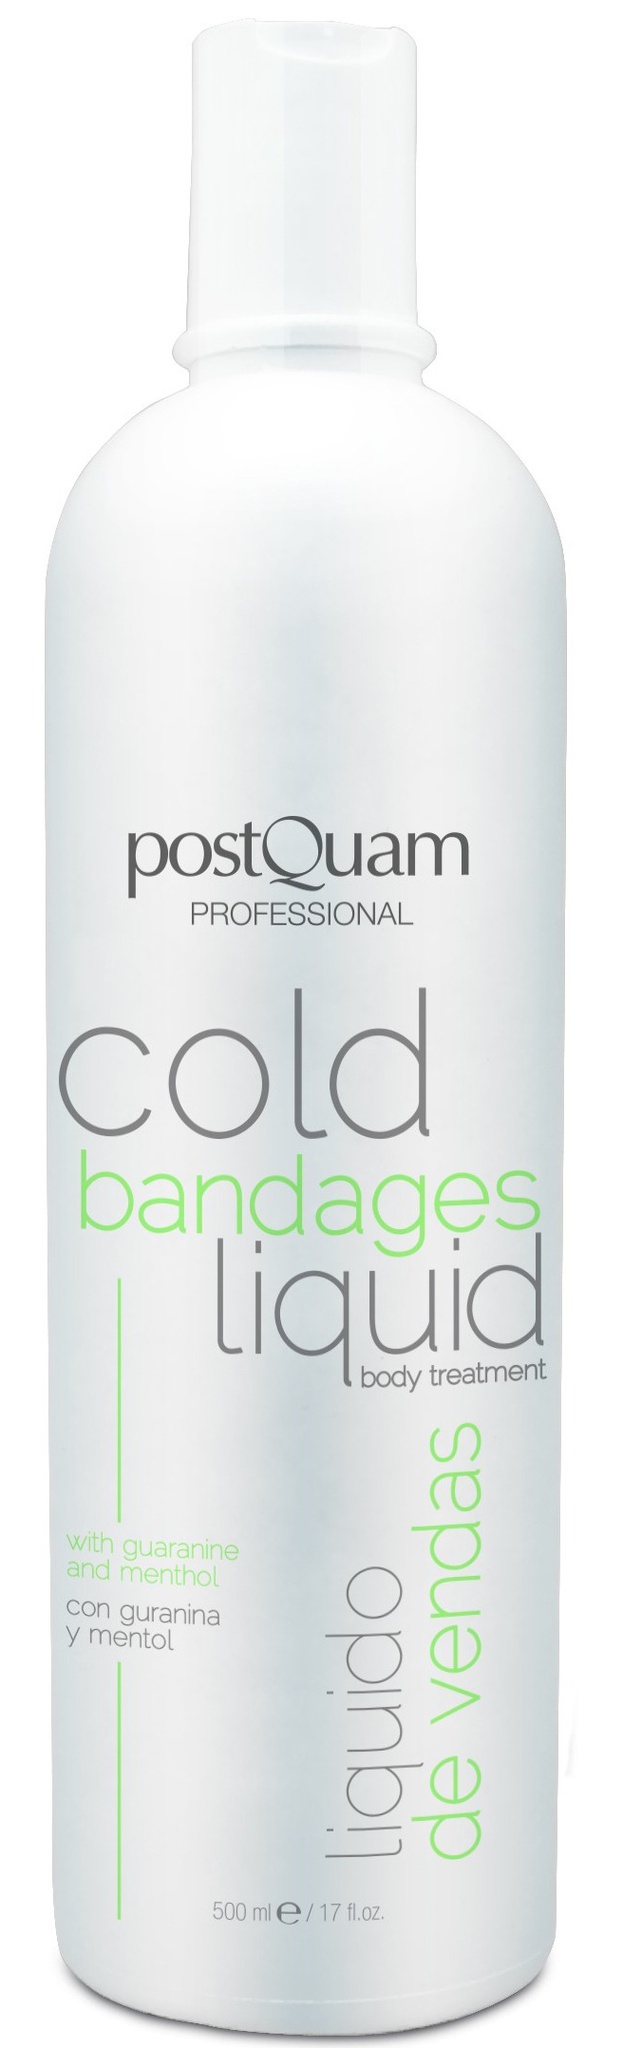 Postquam Cold Bandages Liquid